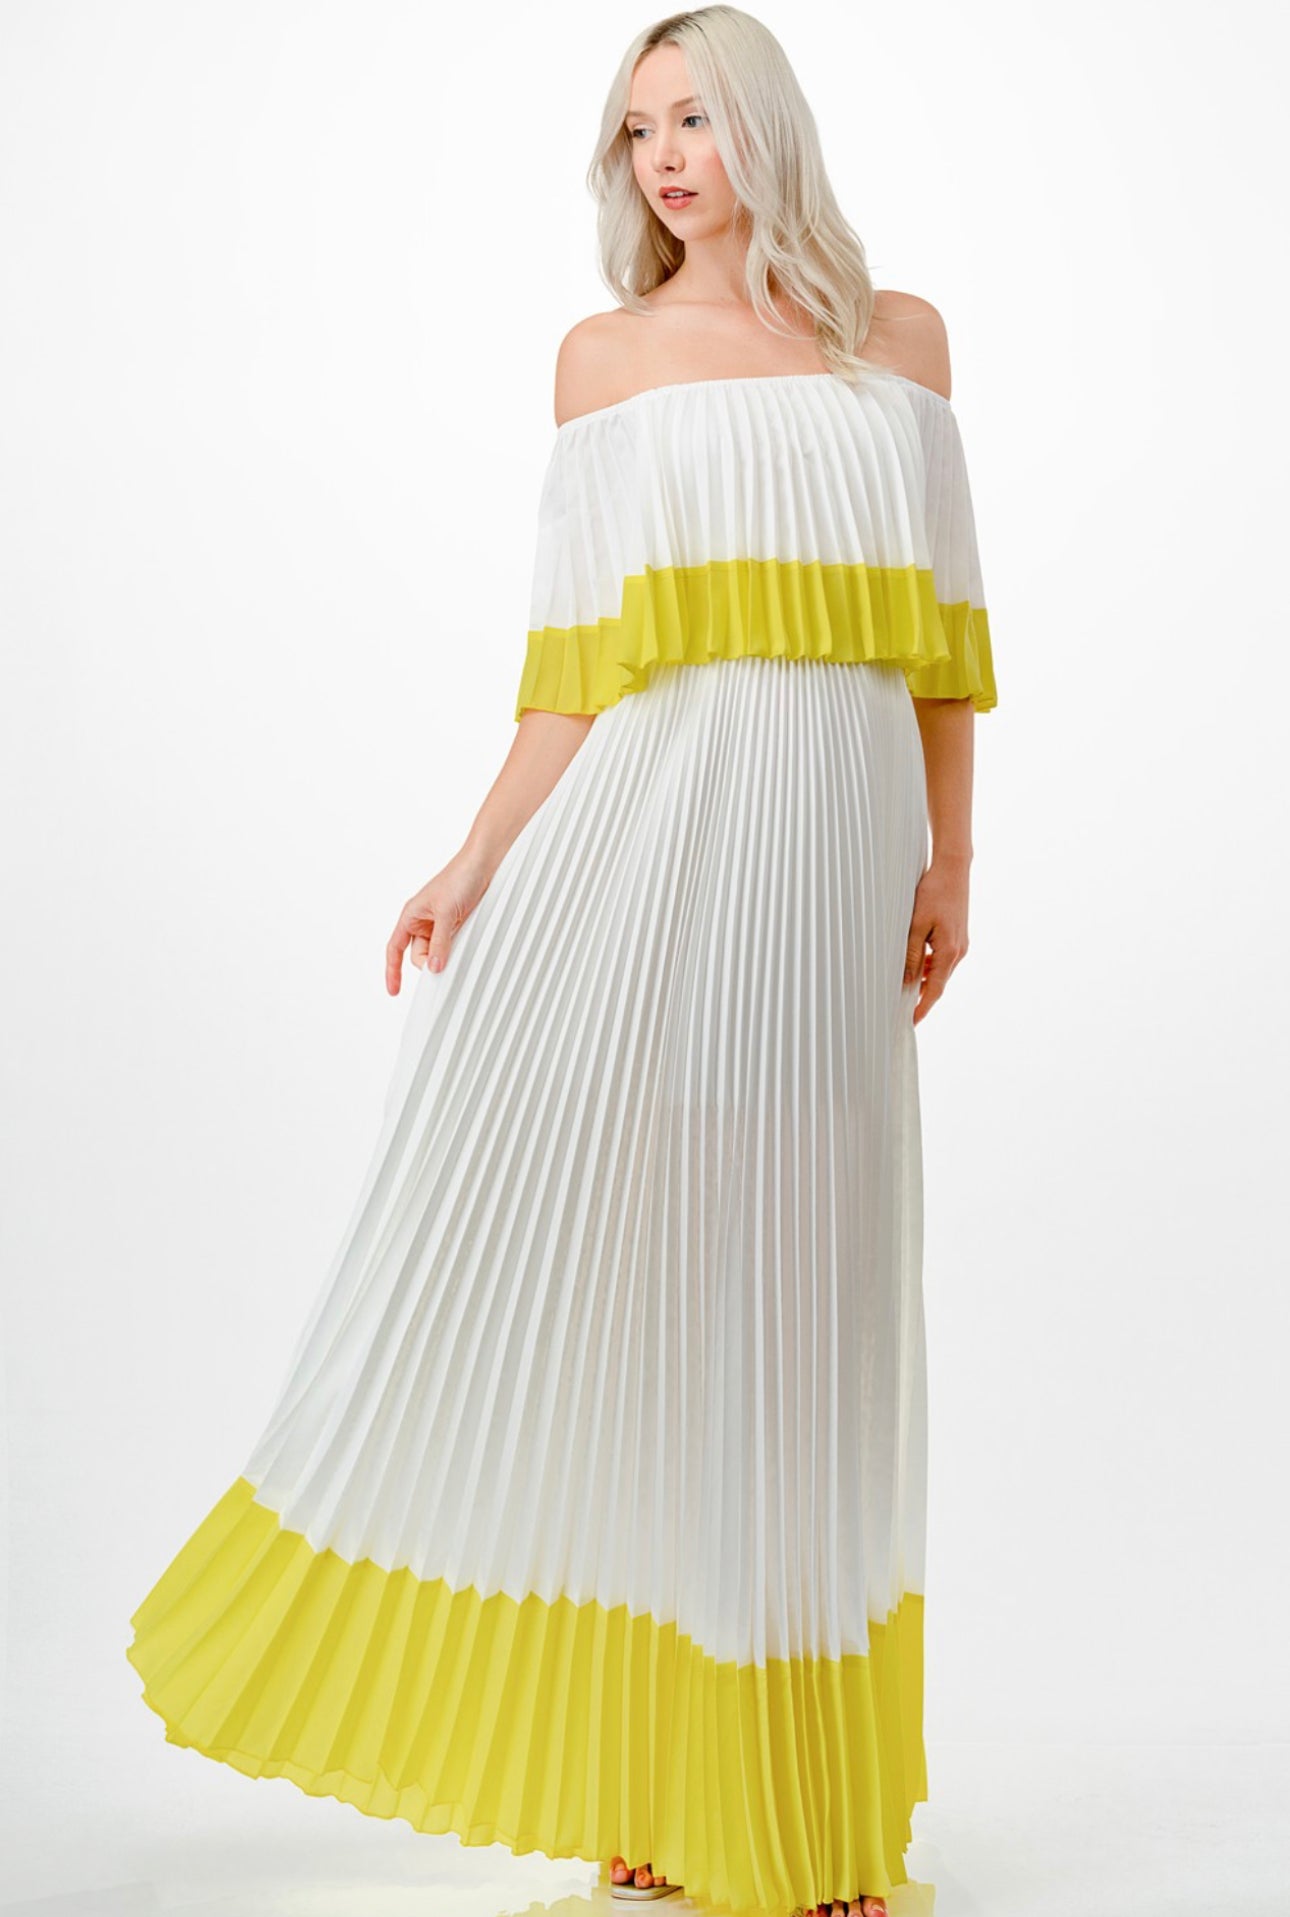 Sequin Asymmetrical Fringe Hem One-Shoulder Dress – Cloved in Ivy Boutique